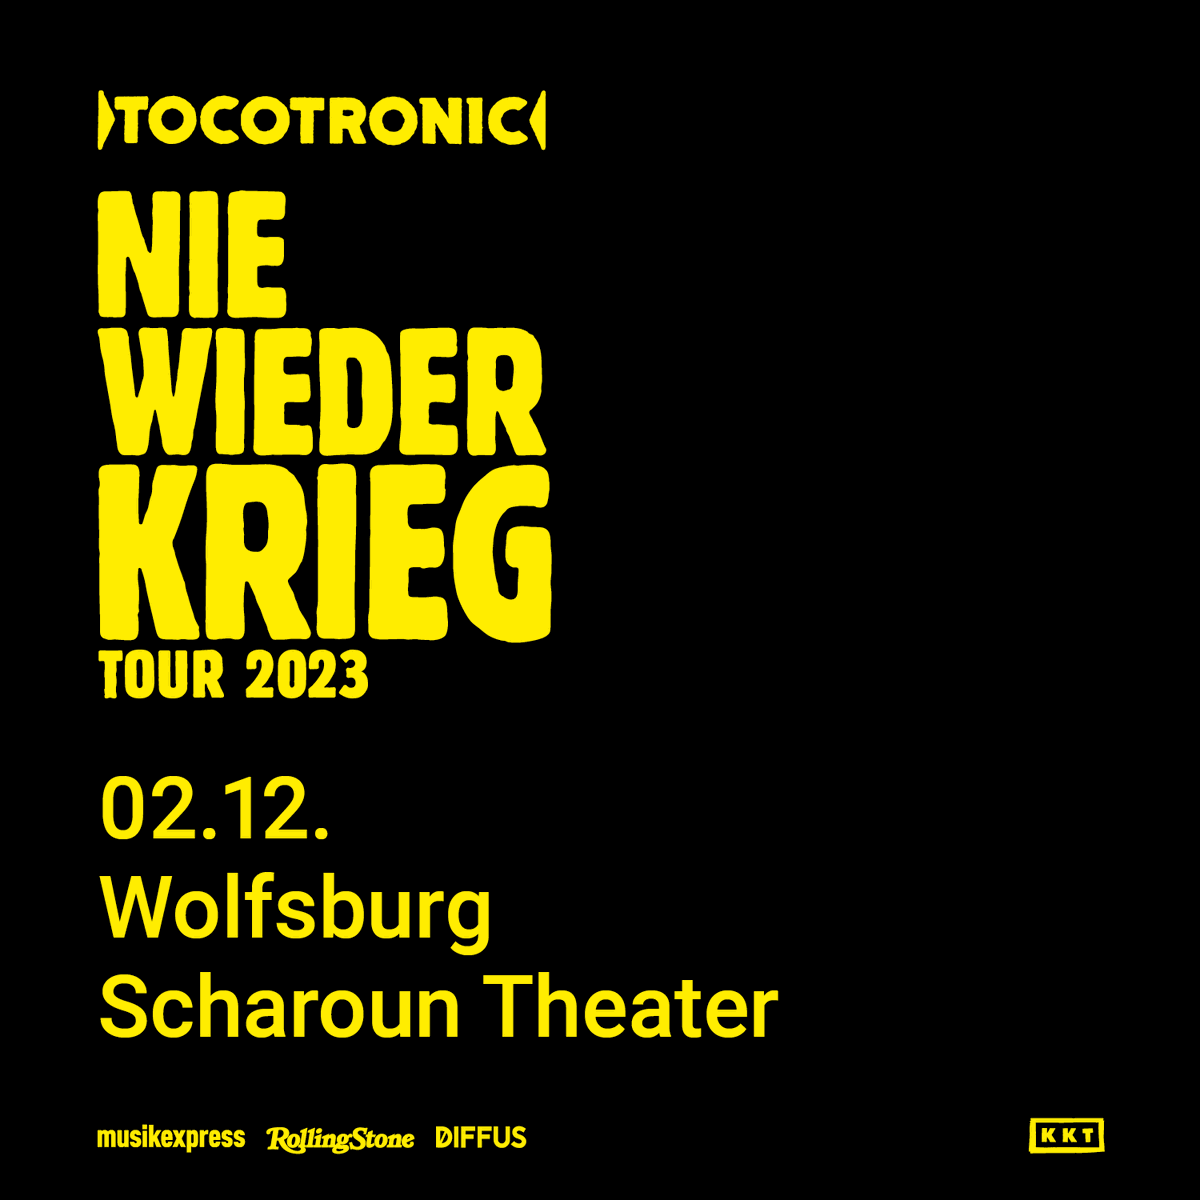 Freaks*, hier nochmals ein Hinweis auf unser letztes Konzert in diesem Jahr: Wir spielen im Scharoun Theater Wolfsburg am 02.12.23. Hier gibts alle Infos und Tickets: theater.wolfsburg.de/.../tocotronic…... Eure Tocs